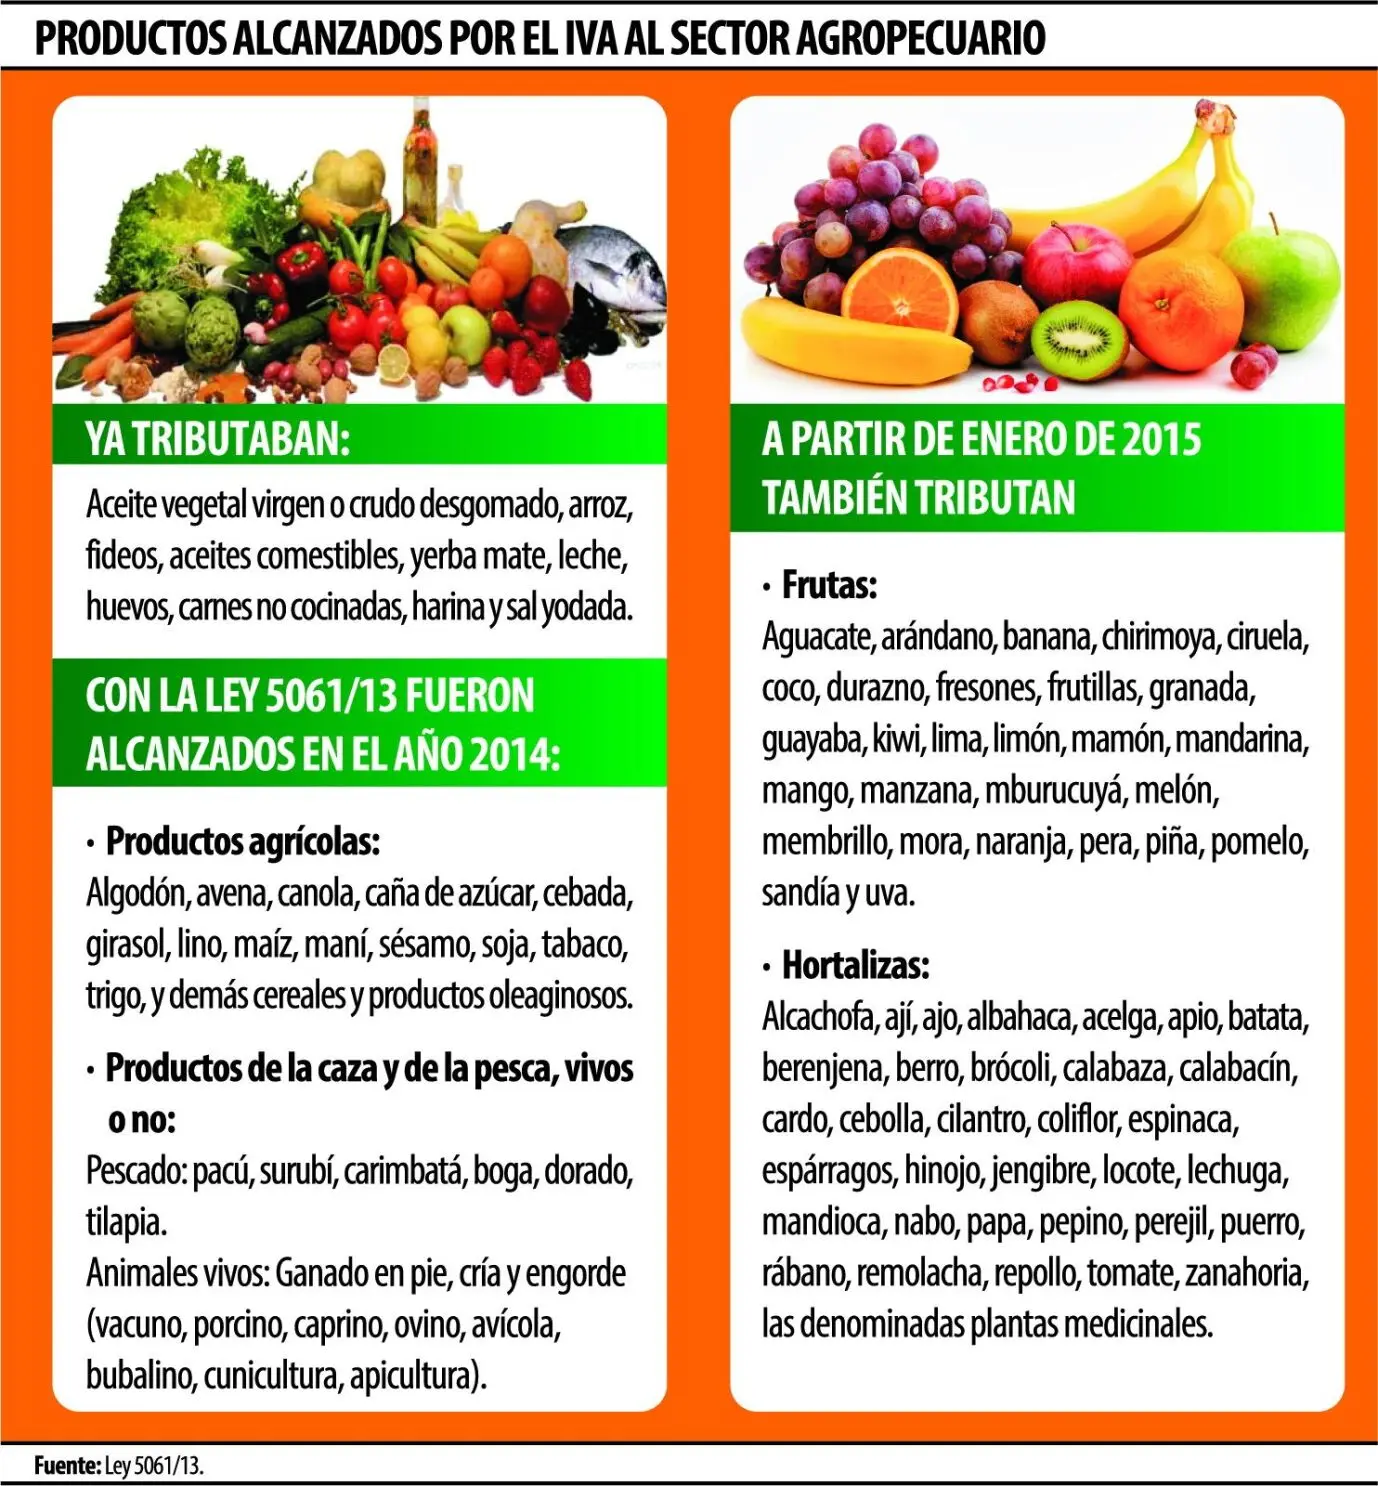 fletes de frutas y verduras causan iva - Las frutas y verduras tienen IVA